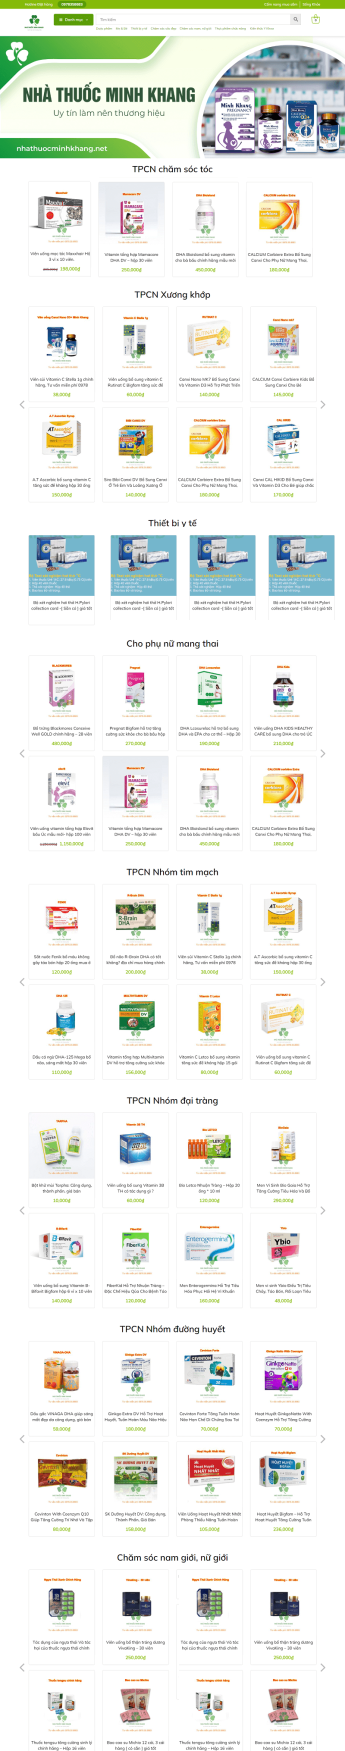 Mẫu thiết kế website Nhà thuốc Minh Khang